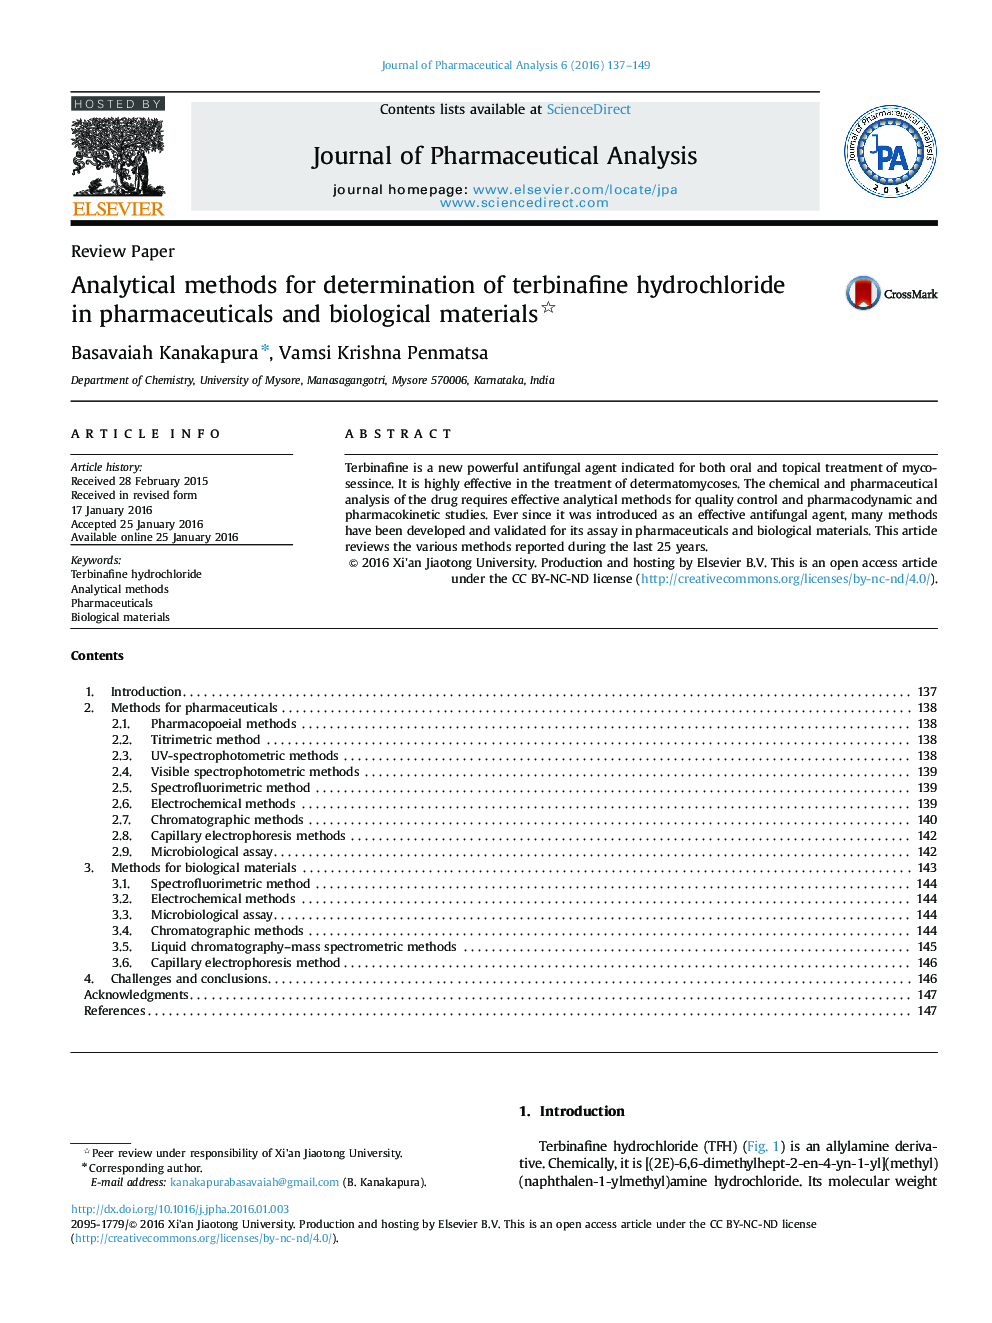 روشهای تحلیلی برای تعیین تربینافین هیدروکلراید در داروها و مواد بیولوژیکی 